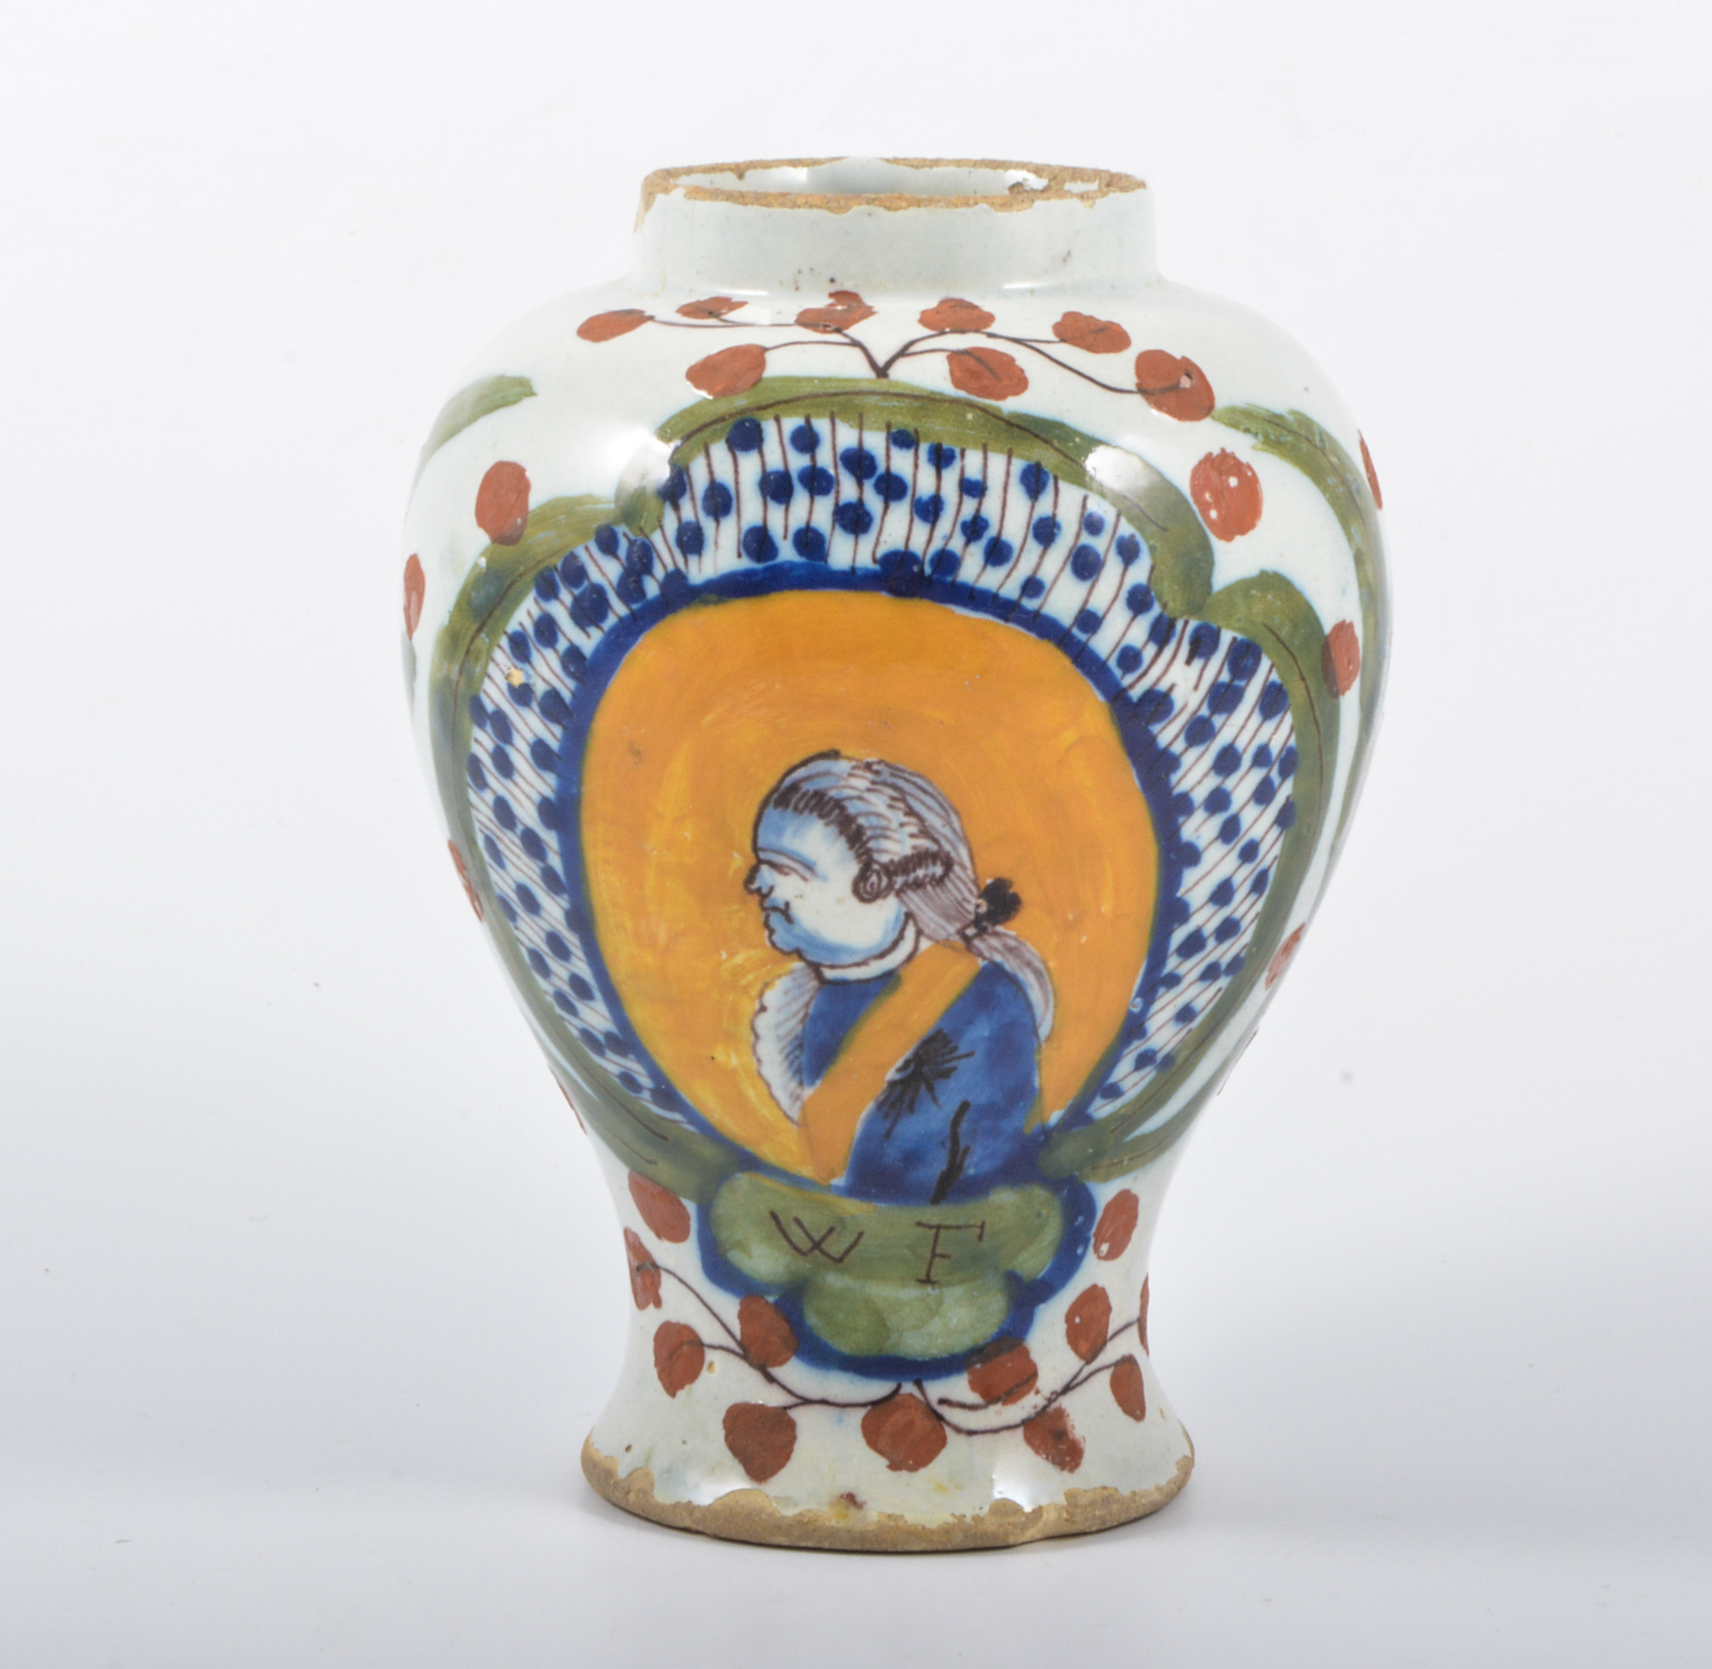 A Delft vase-shaped jar, painted with a profile portrait WF, 15cm.